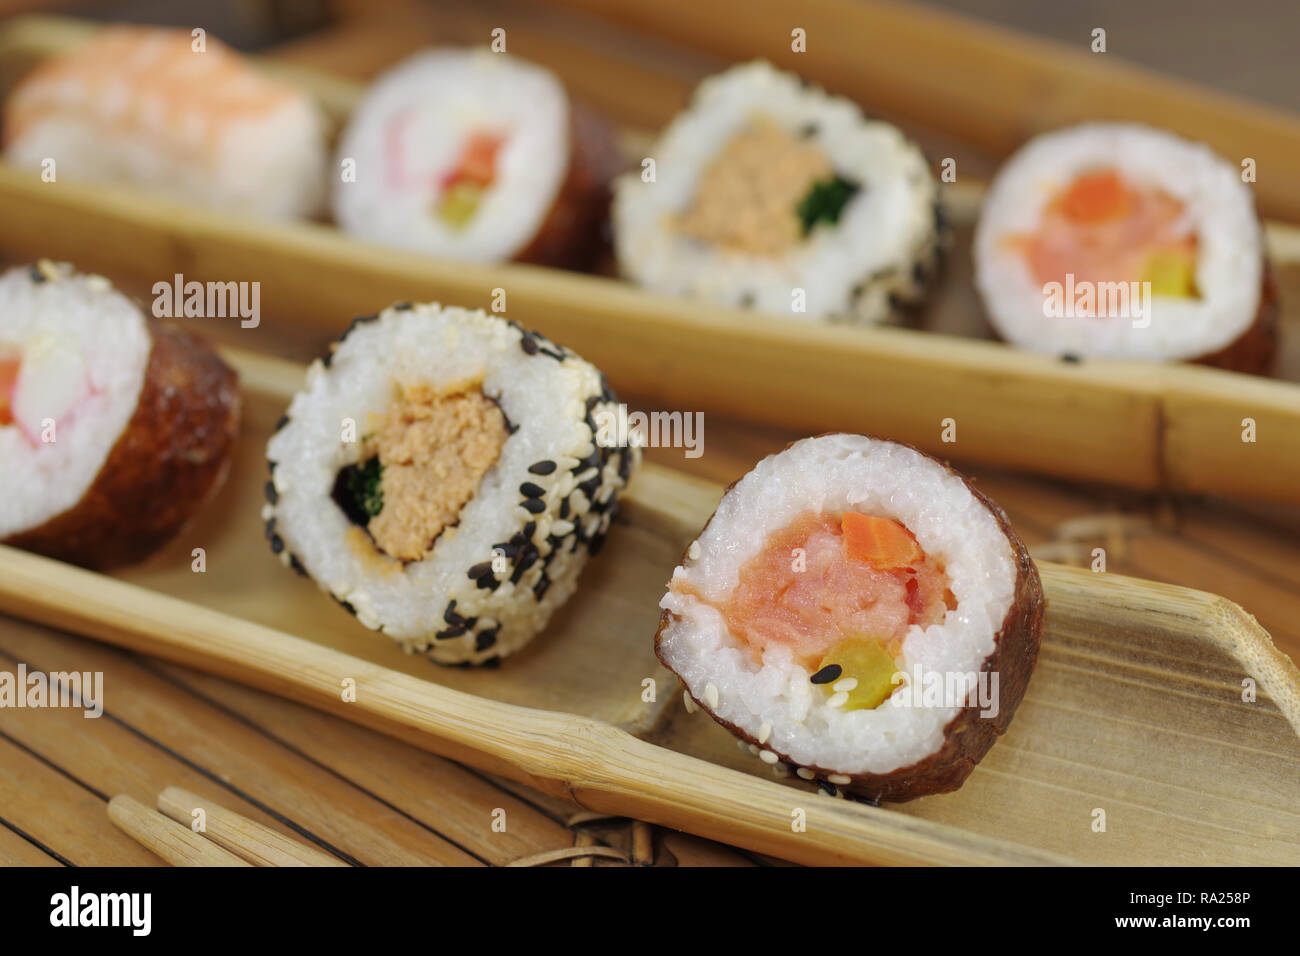 Porción de sushi y la madera en la placa hopsticks Foto de stock